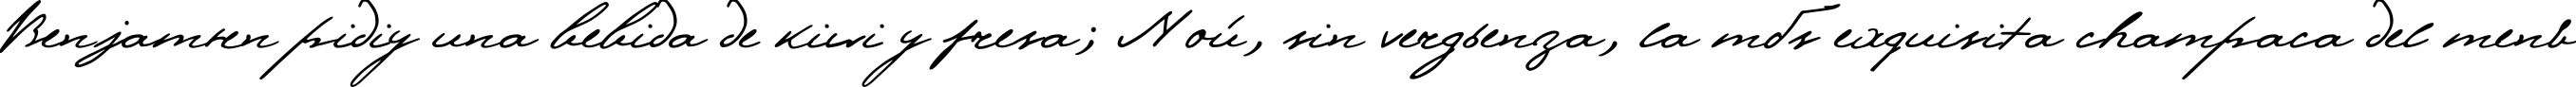 Пример написания шрифтом Pushkin текста на испанском